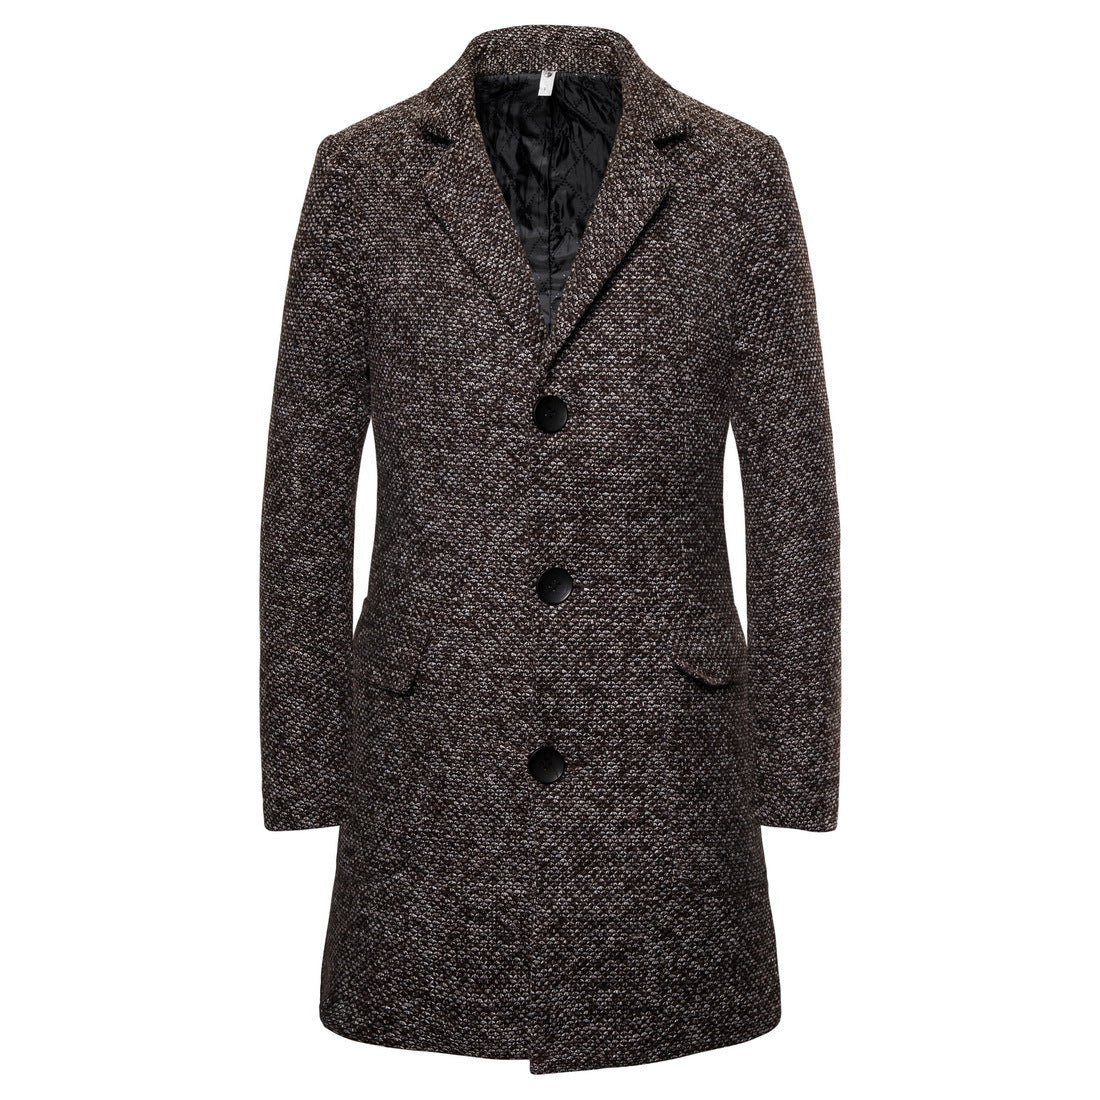 Woolen coat men's single-breasted men's woolen trench coat